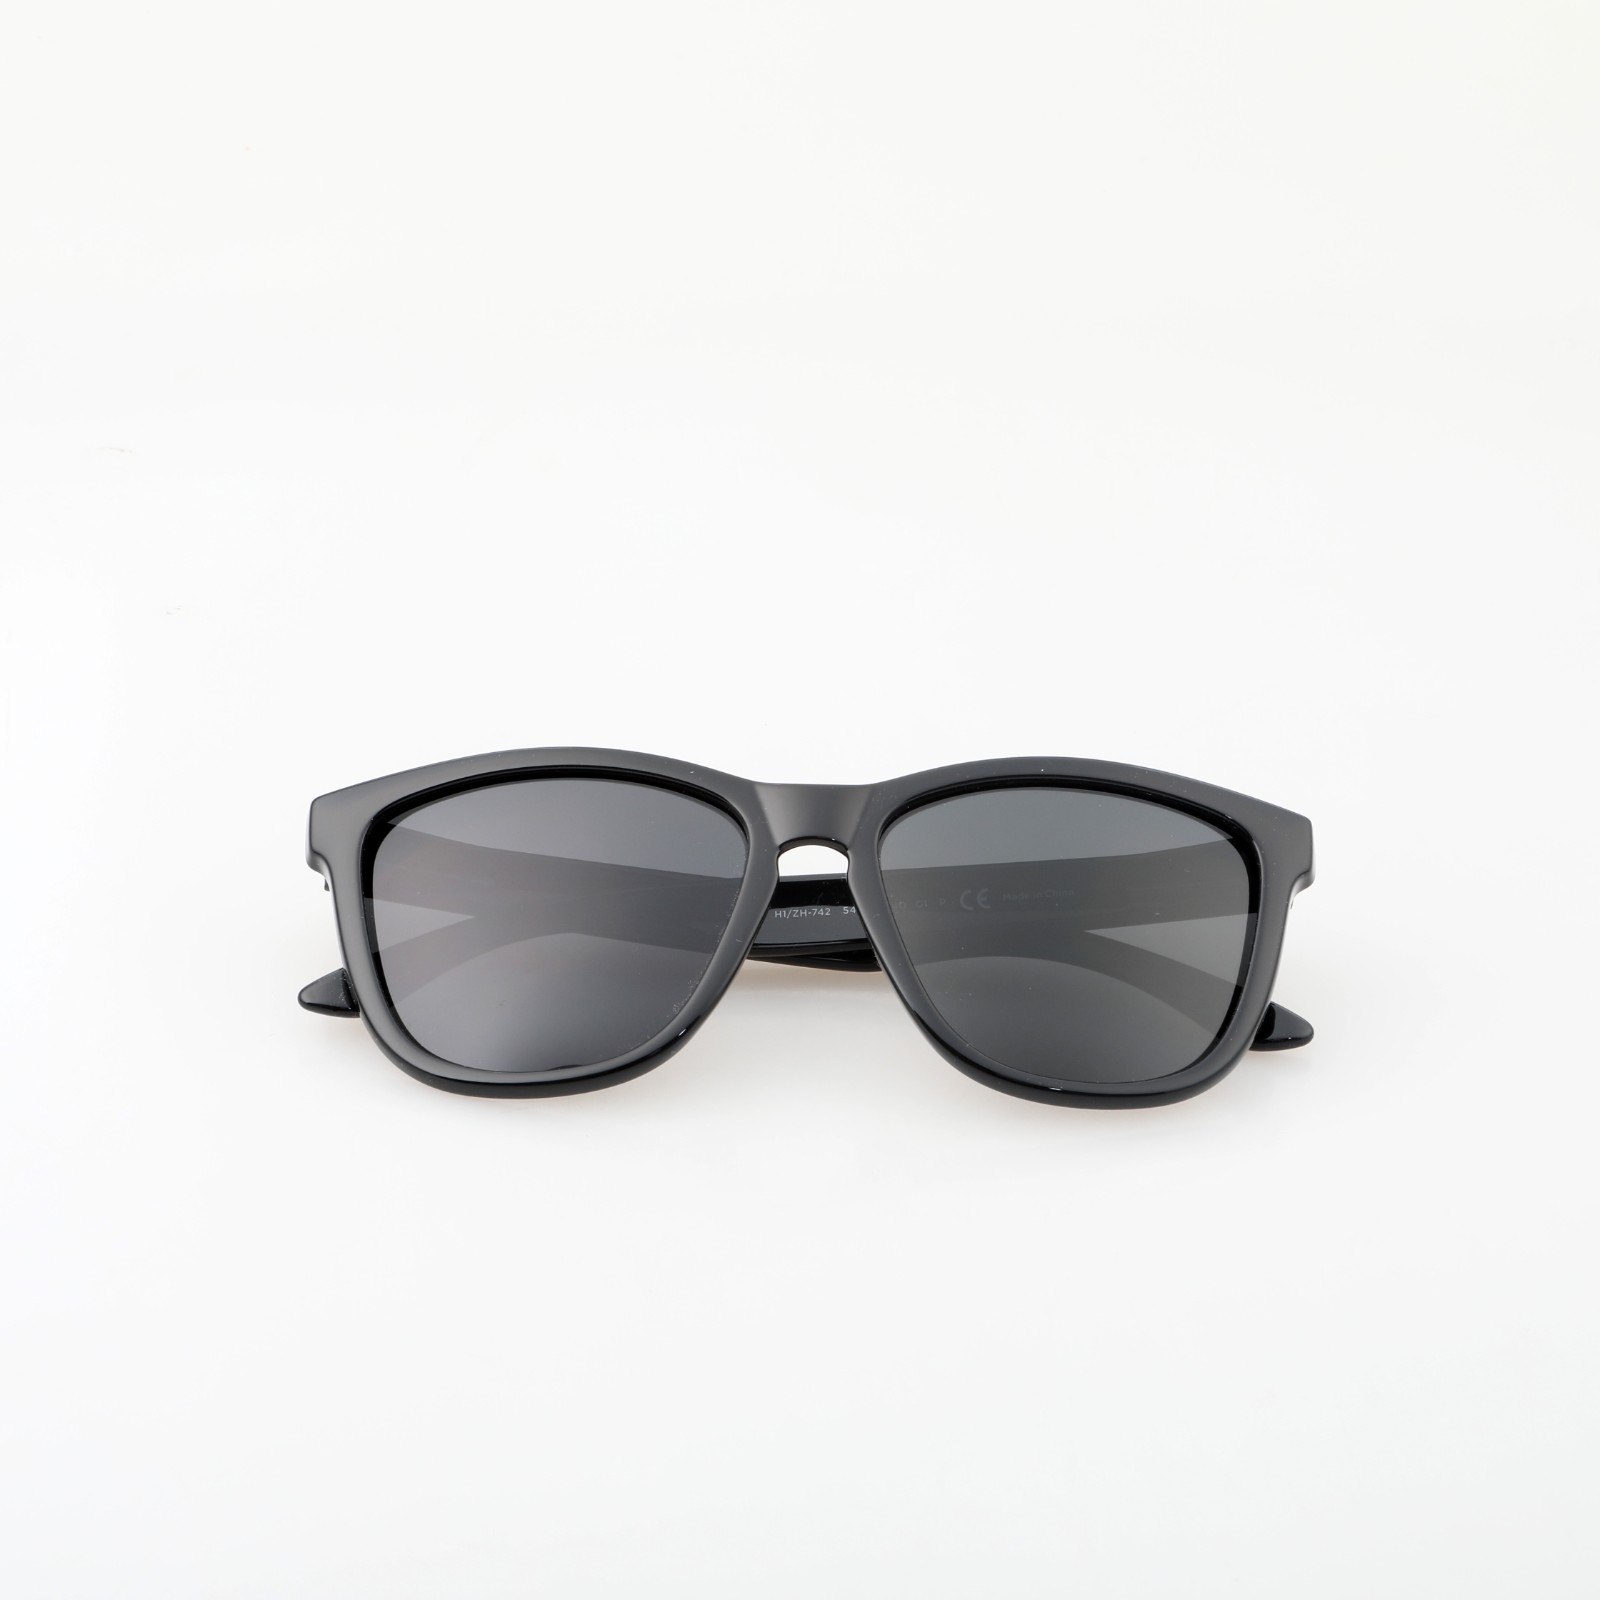 (RTS) H1/ZH-742 C1  PC sunglasses 2021 cheaper price pc sunglasses polarized polycarbonate sun glasses in stock